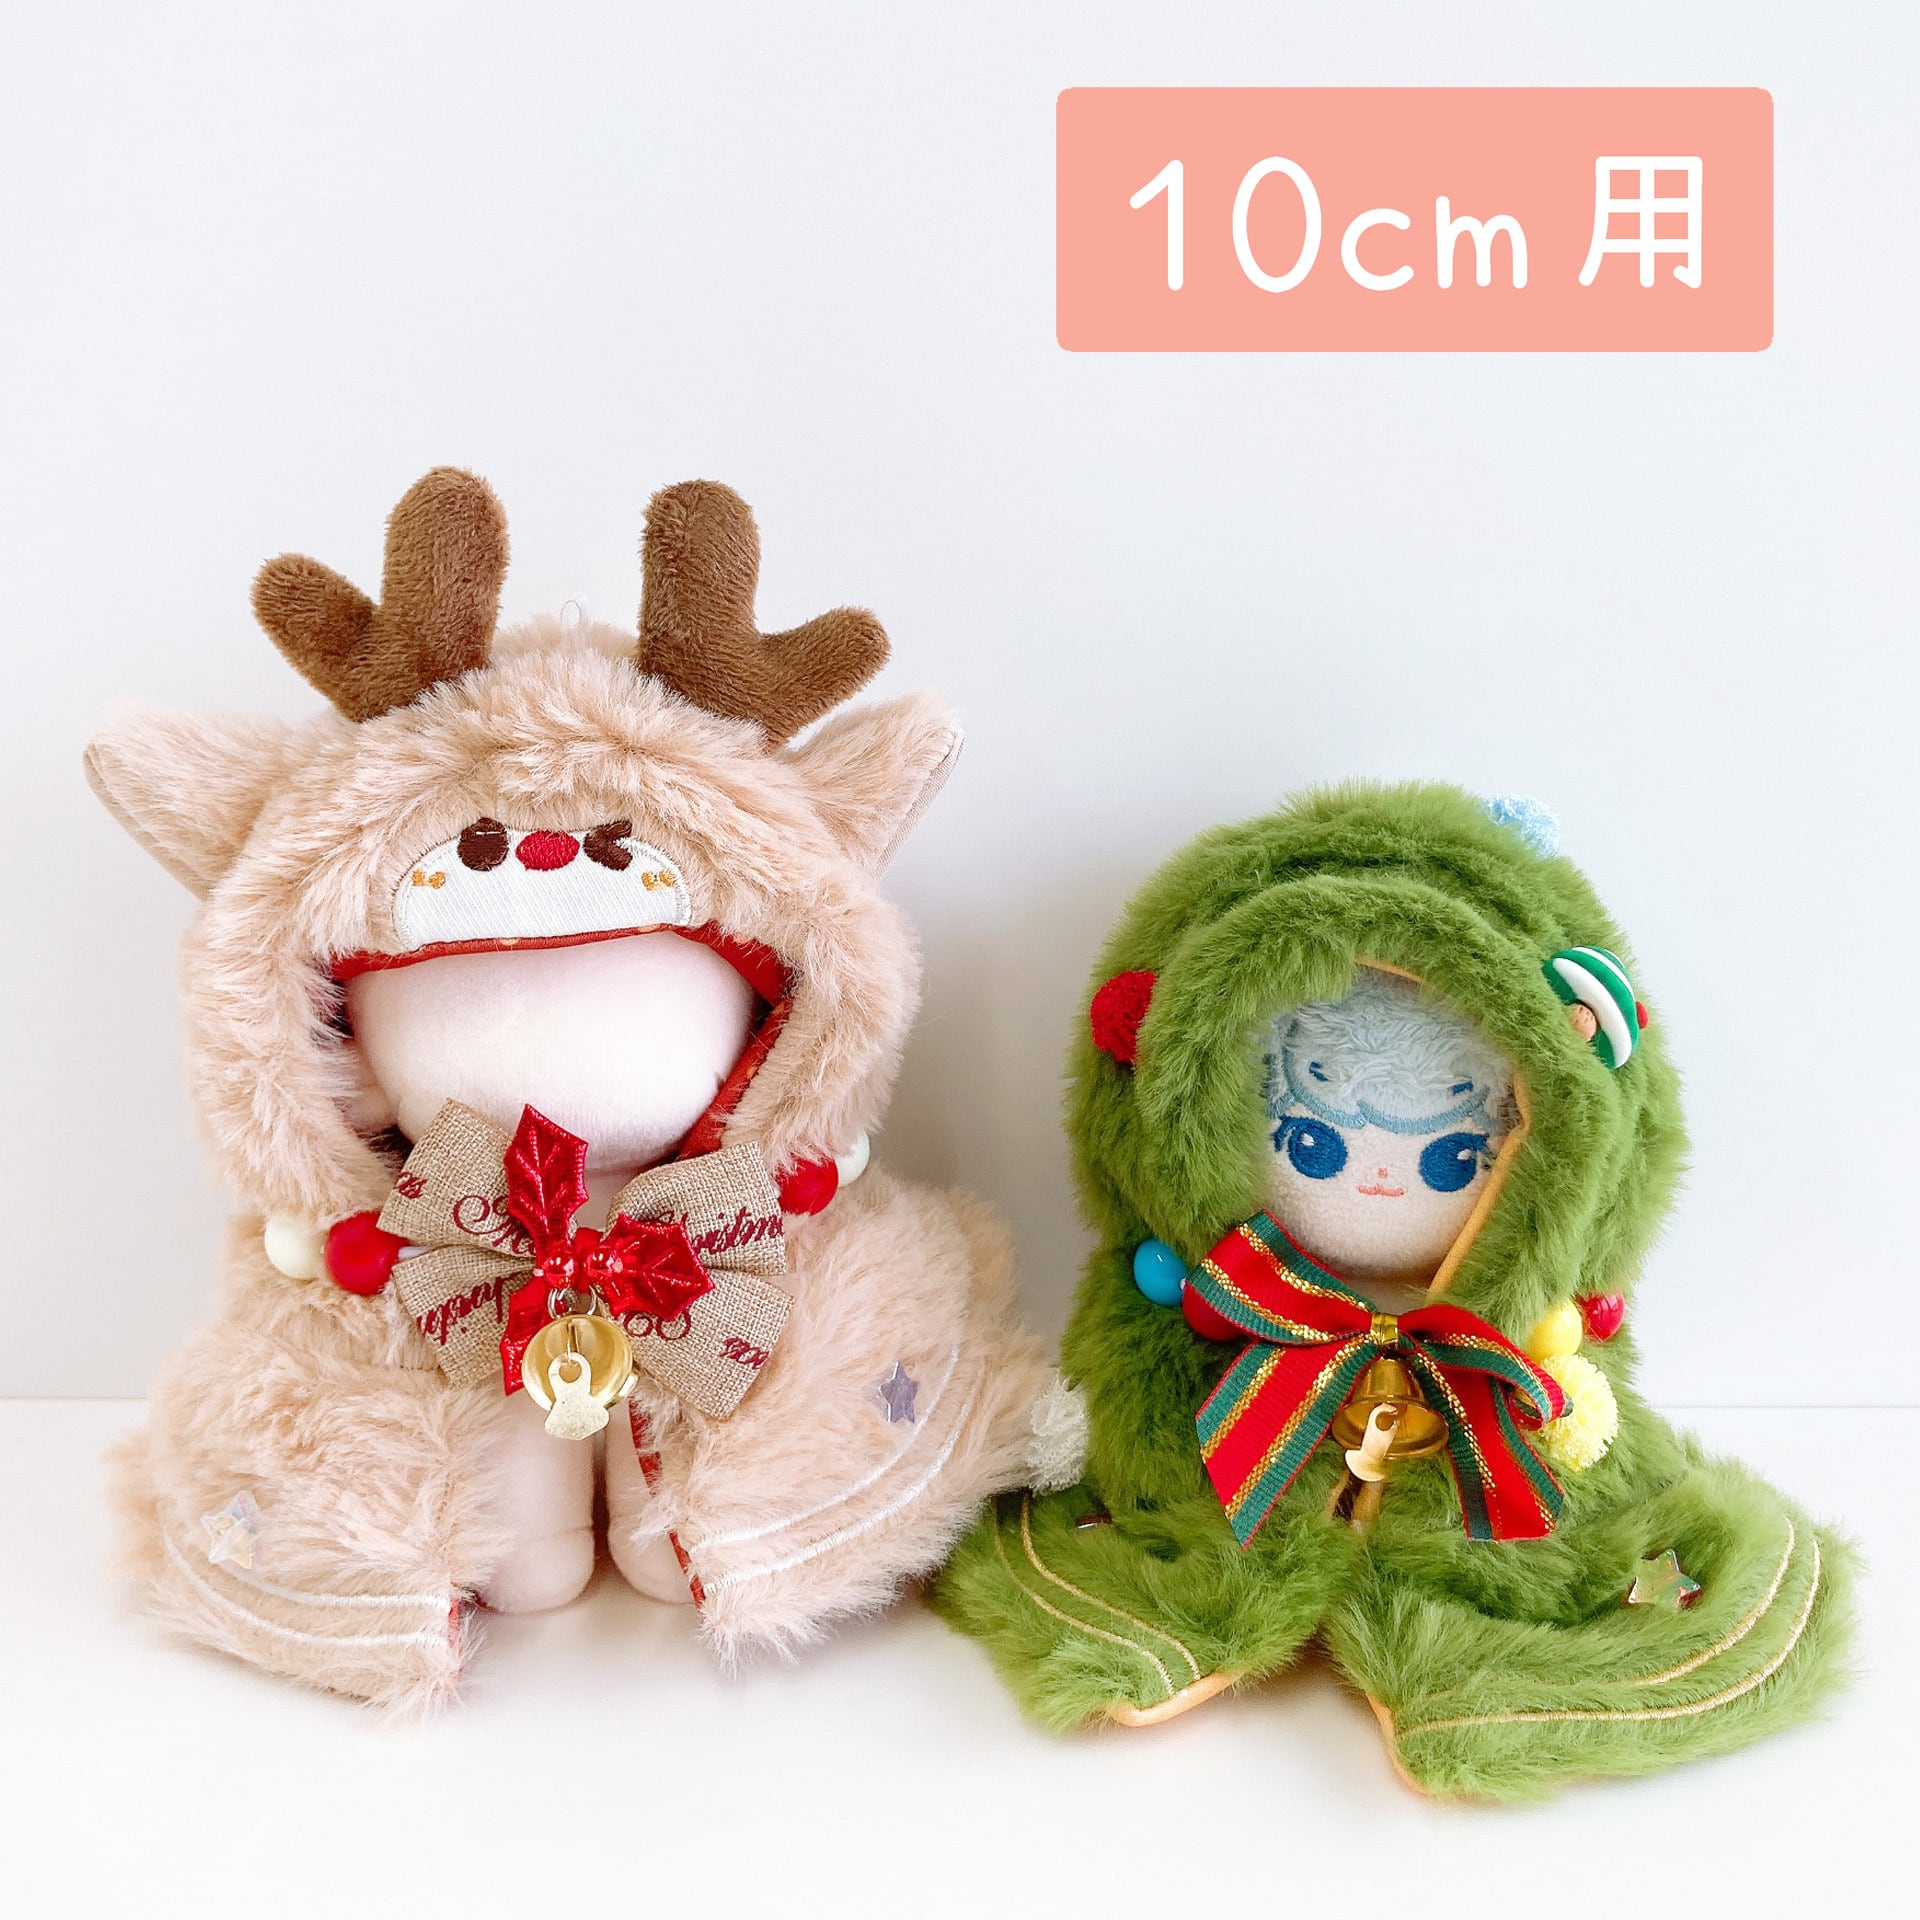 【10cm】衣装セット ふわふわクリスマスのケープ